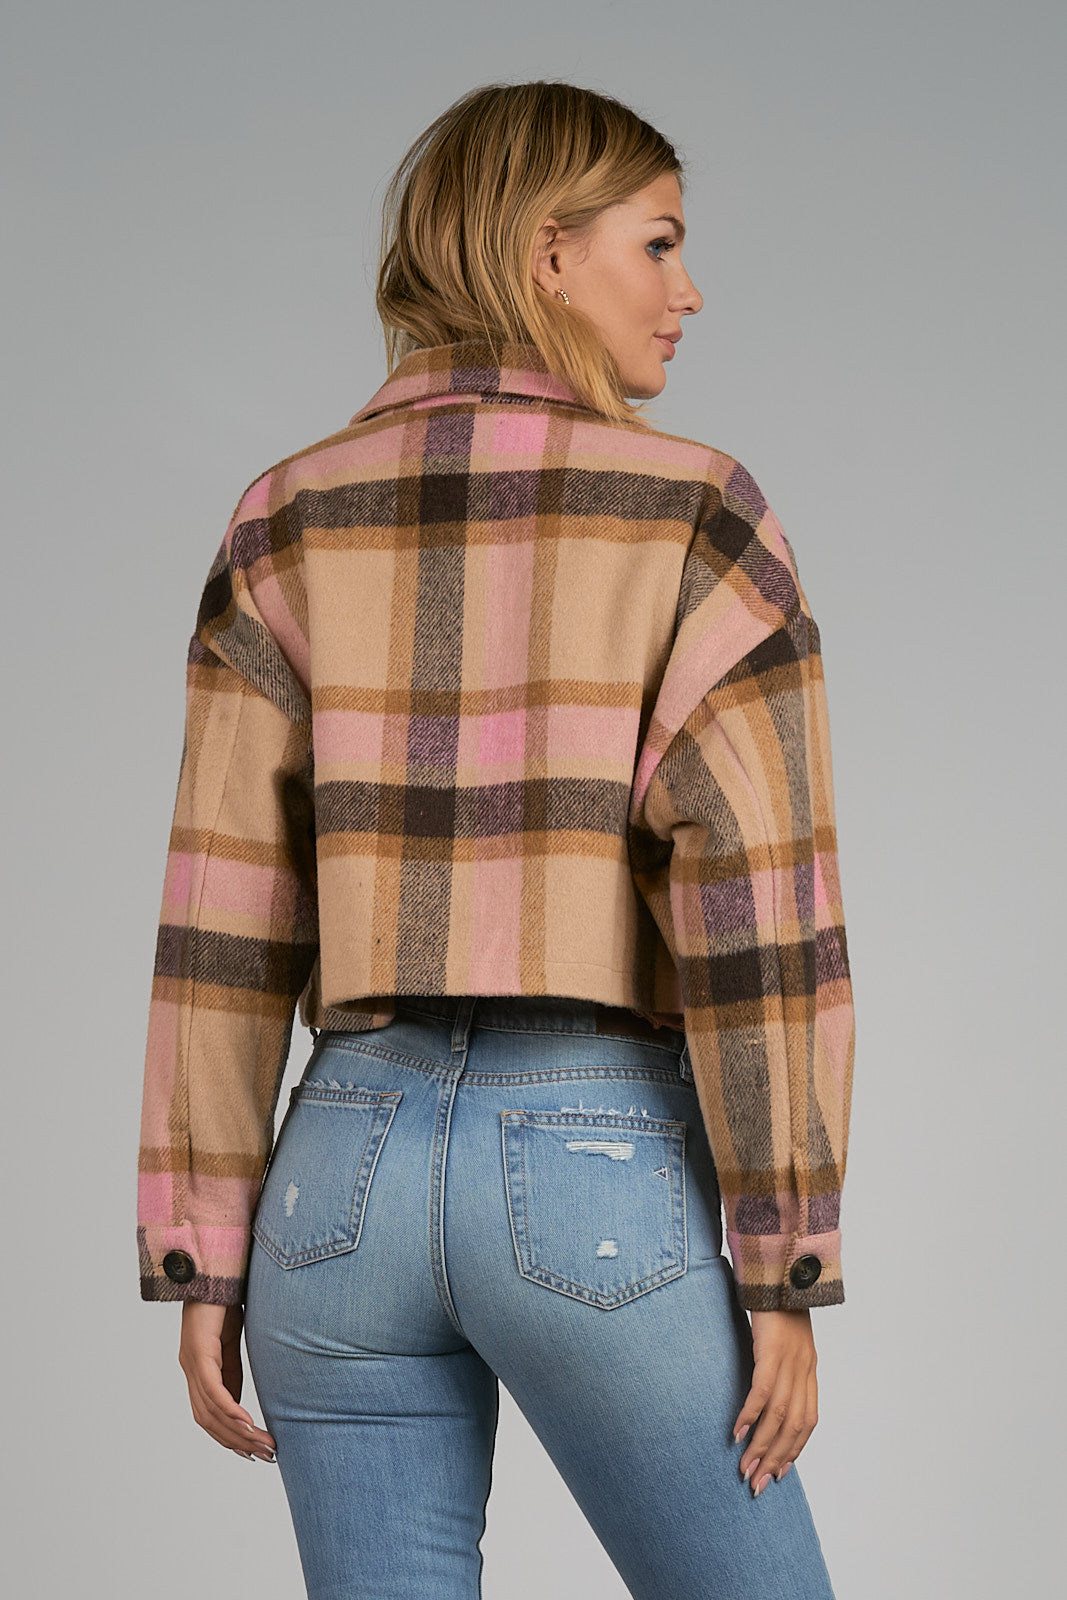 Elan Pink/Brown Plaid Crop Jacket